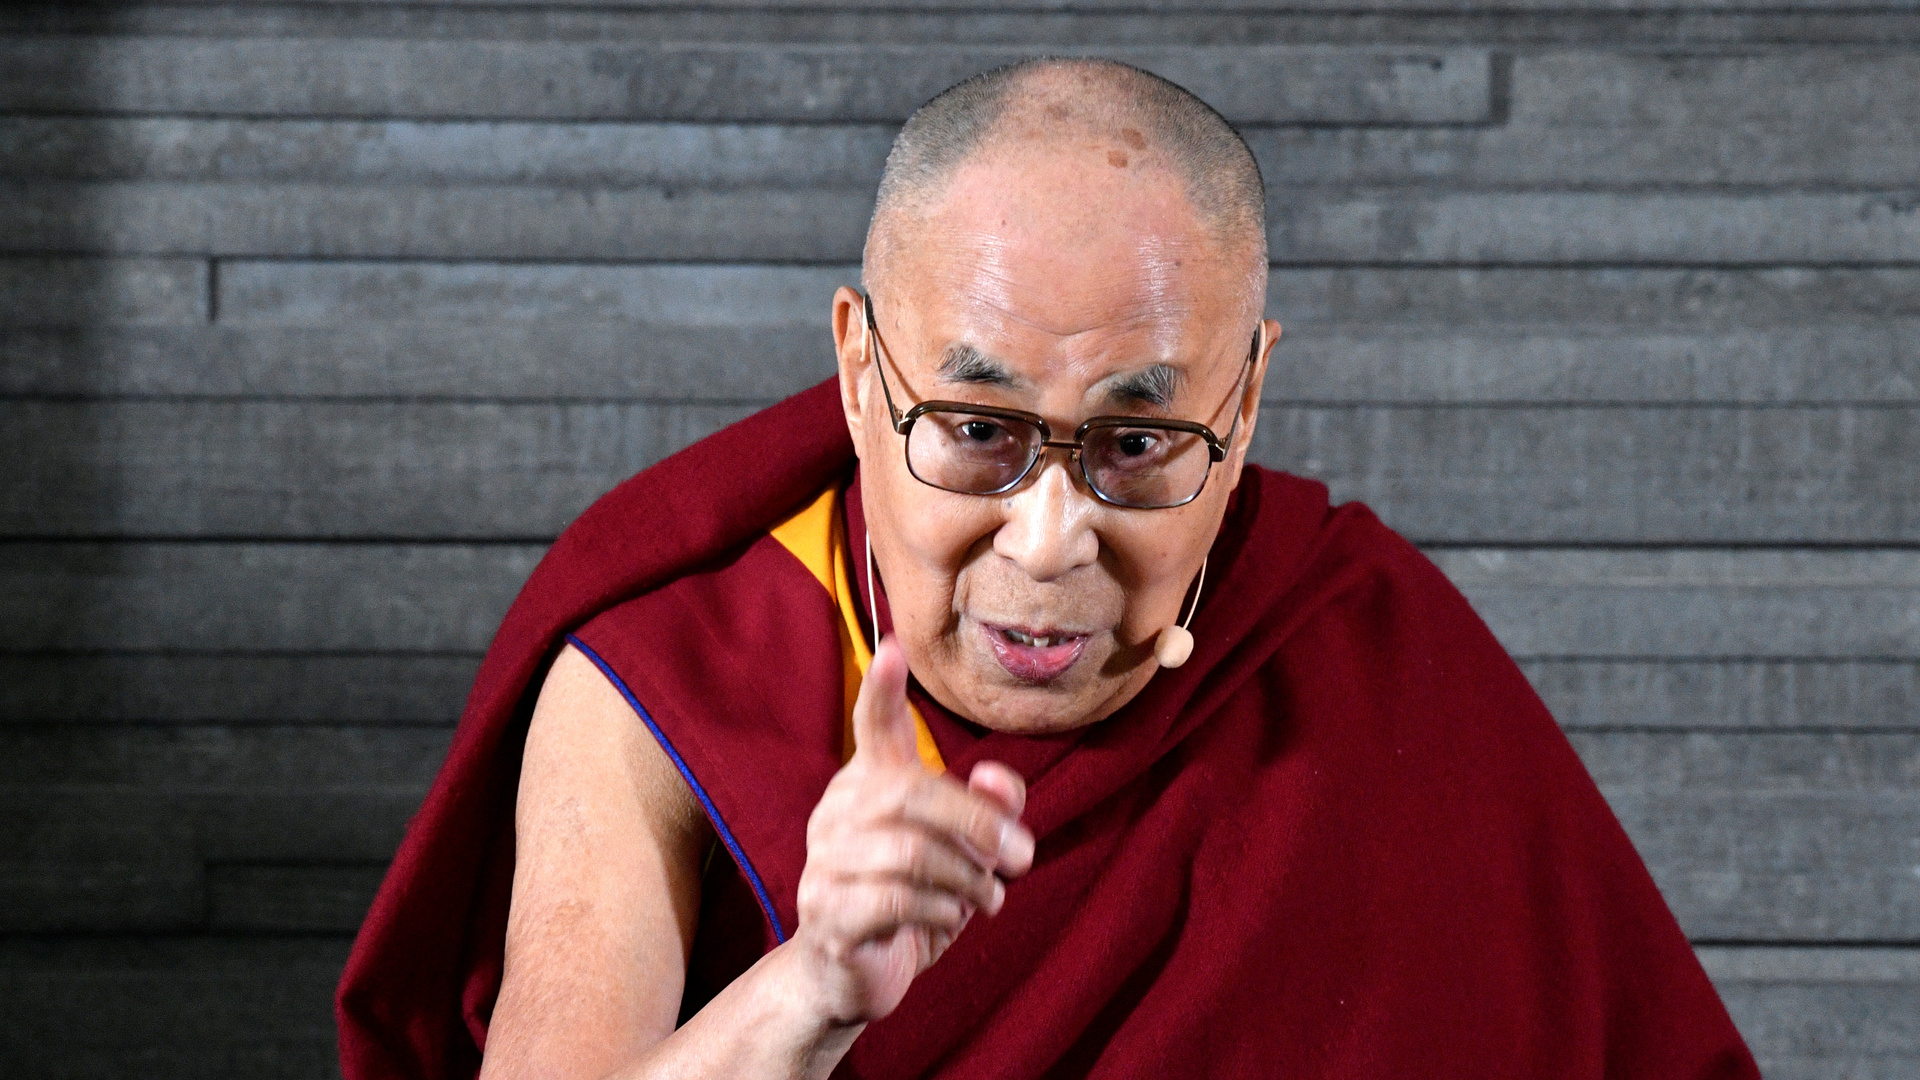 الدالاي لاما ينصح بترديد تعويذة محددة لمكافحة الوباء